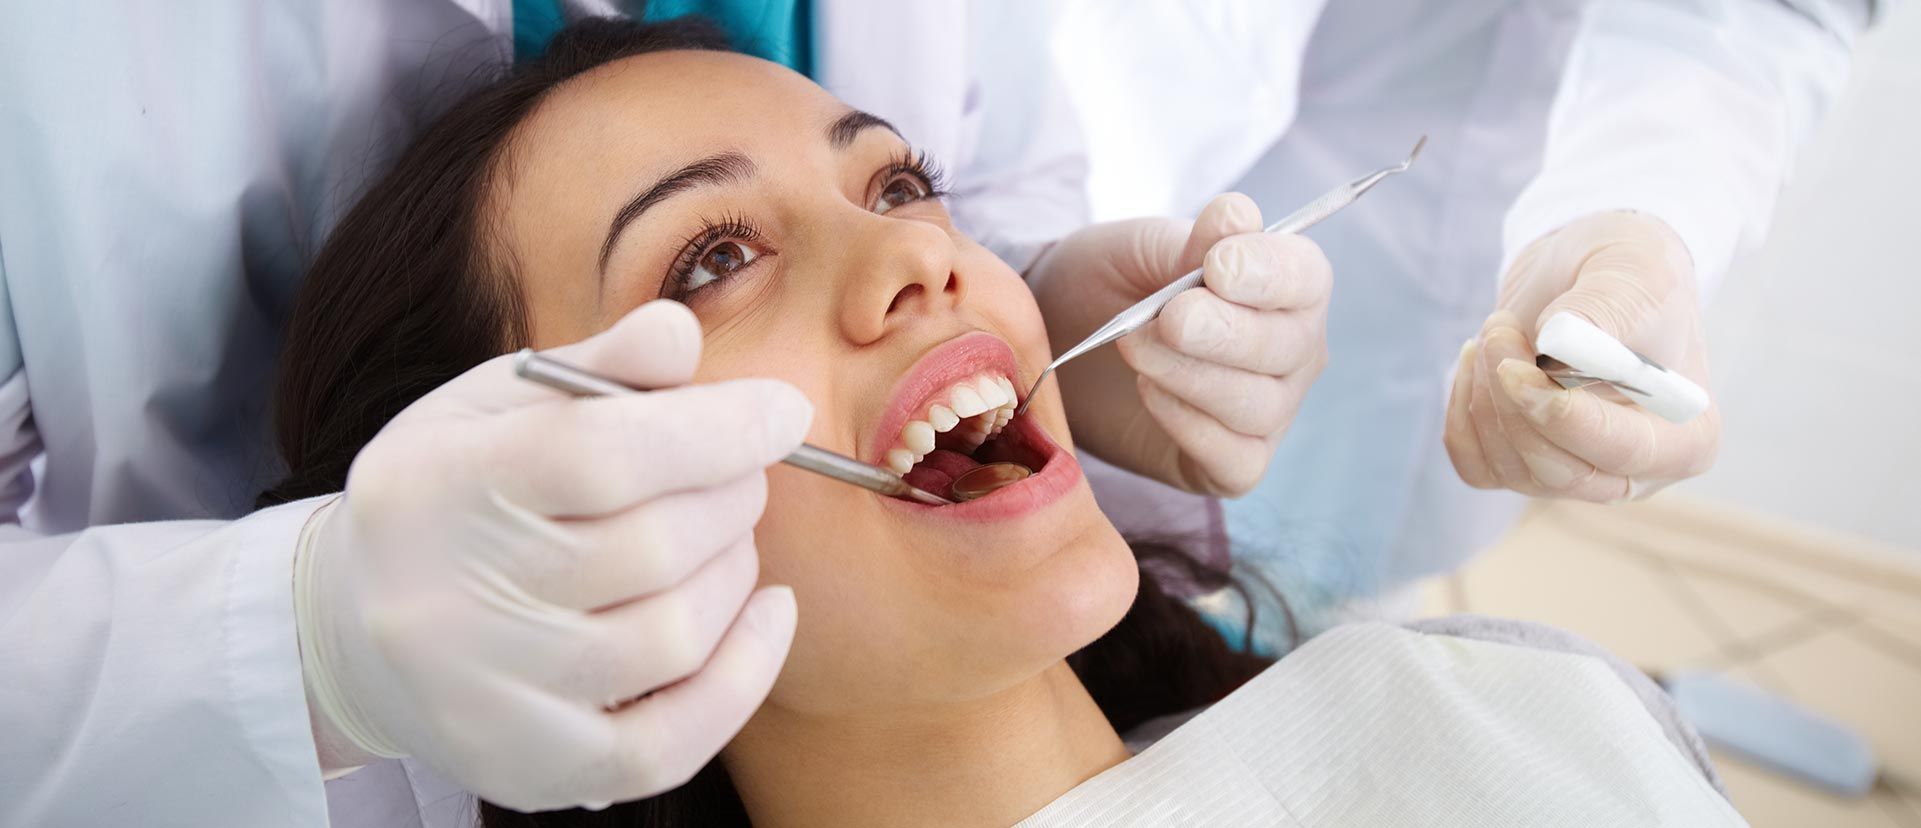 پرکردن دندان یک سطحی با آمالگام دکتر سعید مزیدی در تهران 1